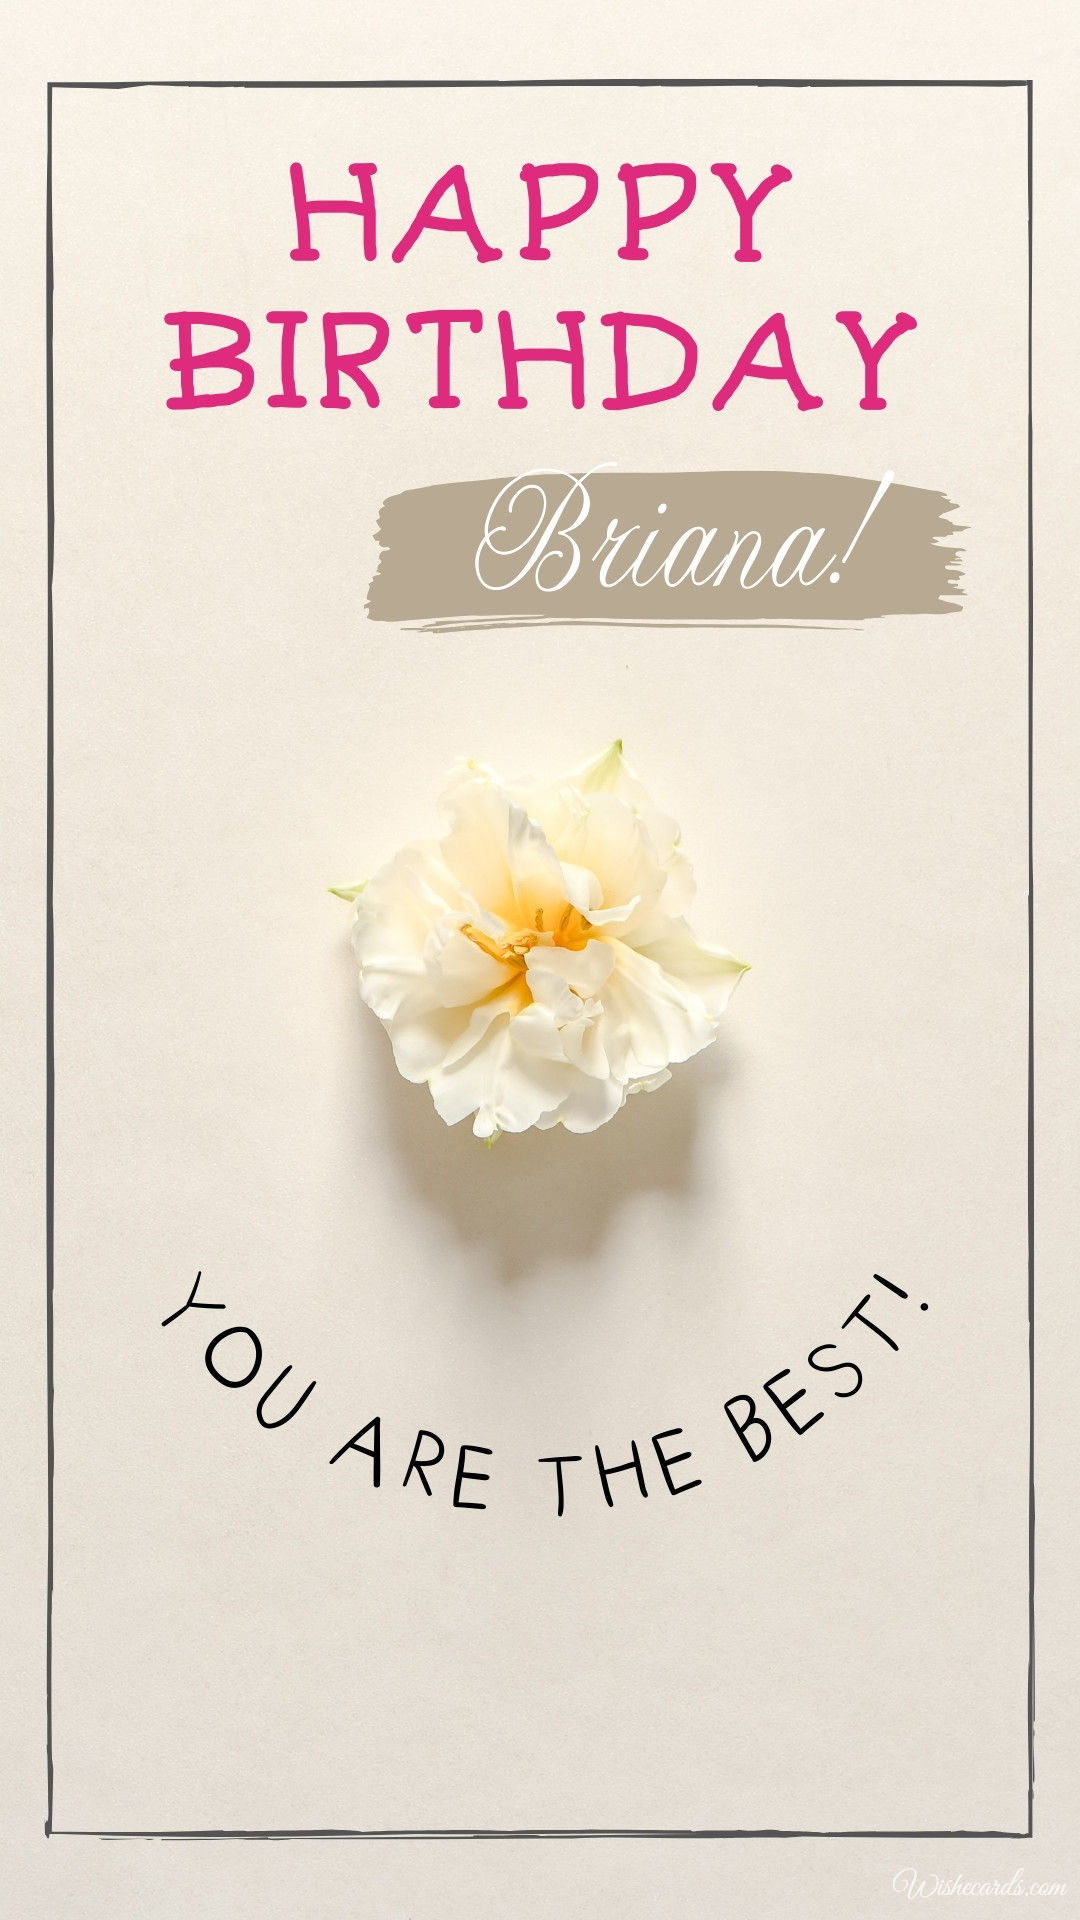 Happy Birthday Briana Image